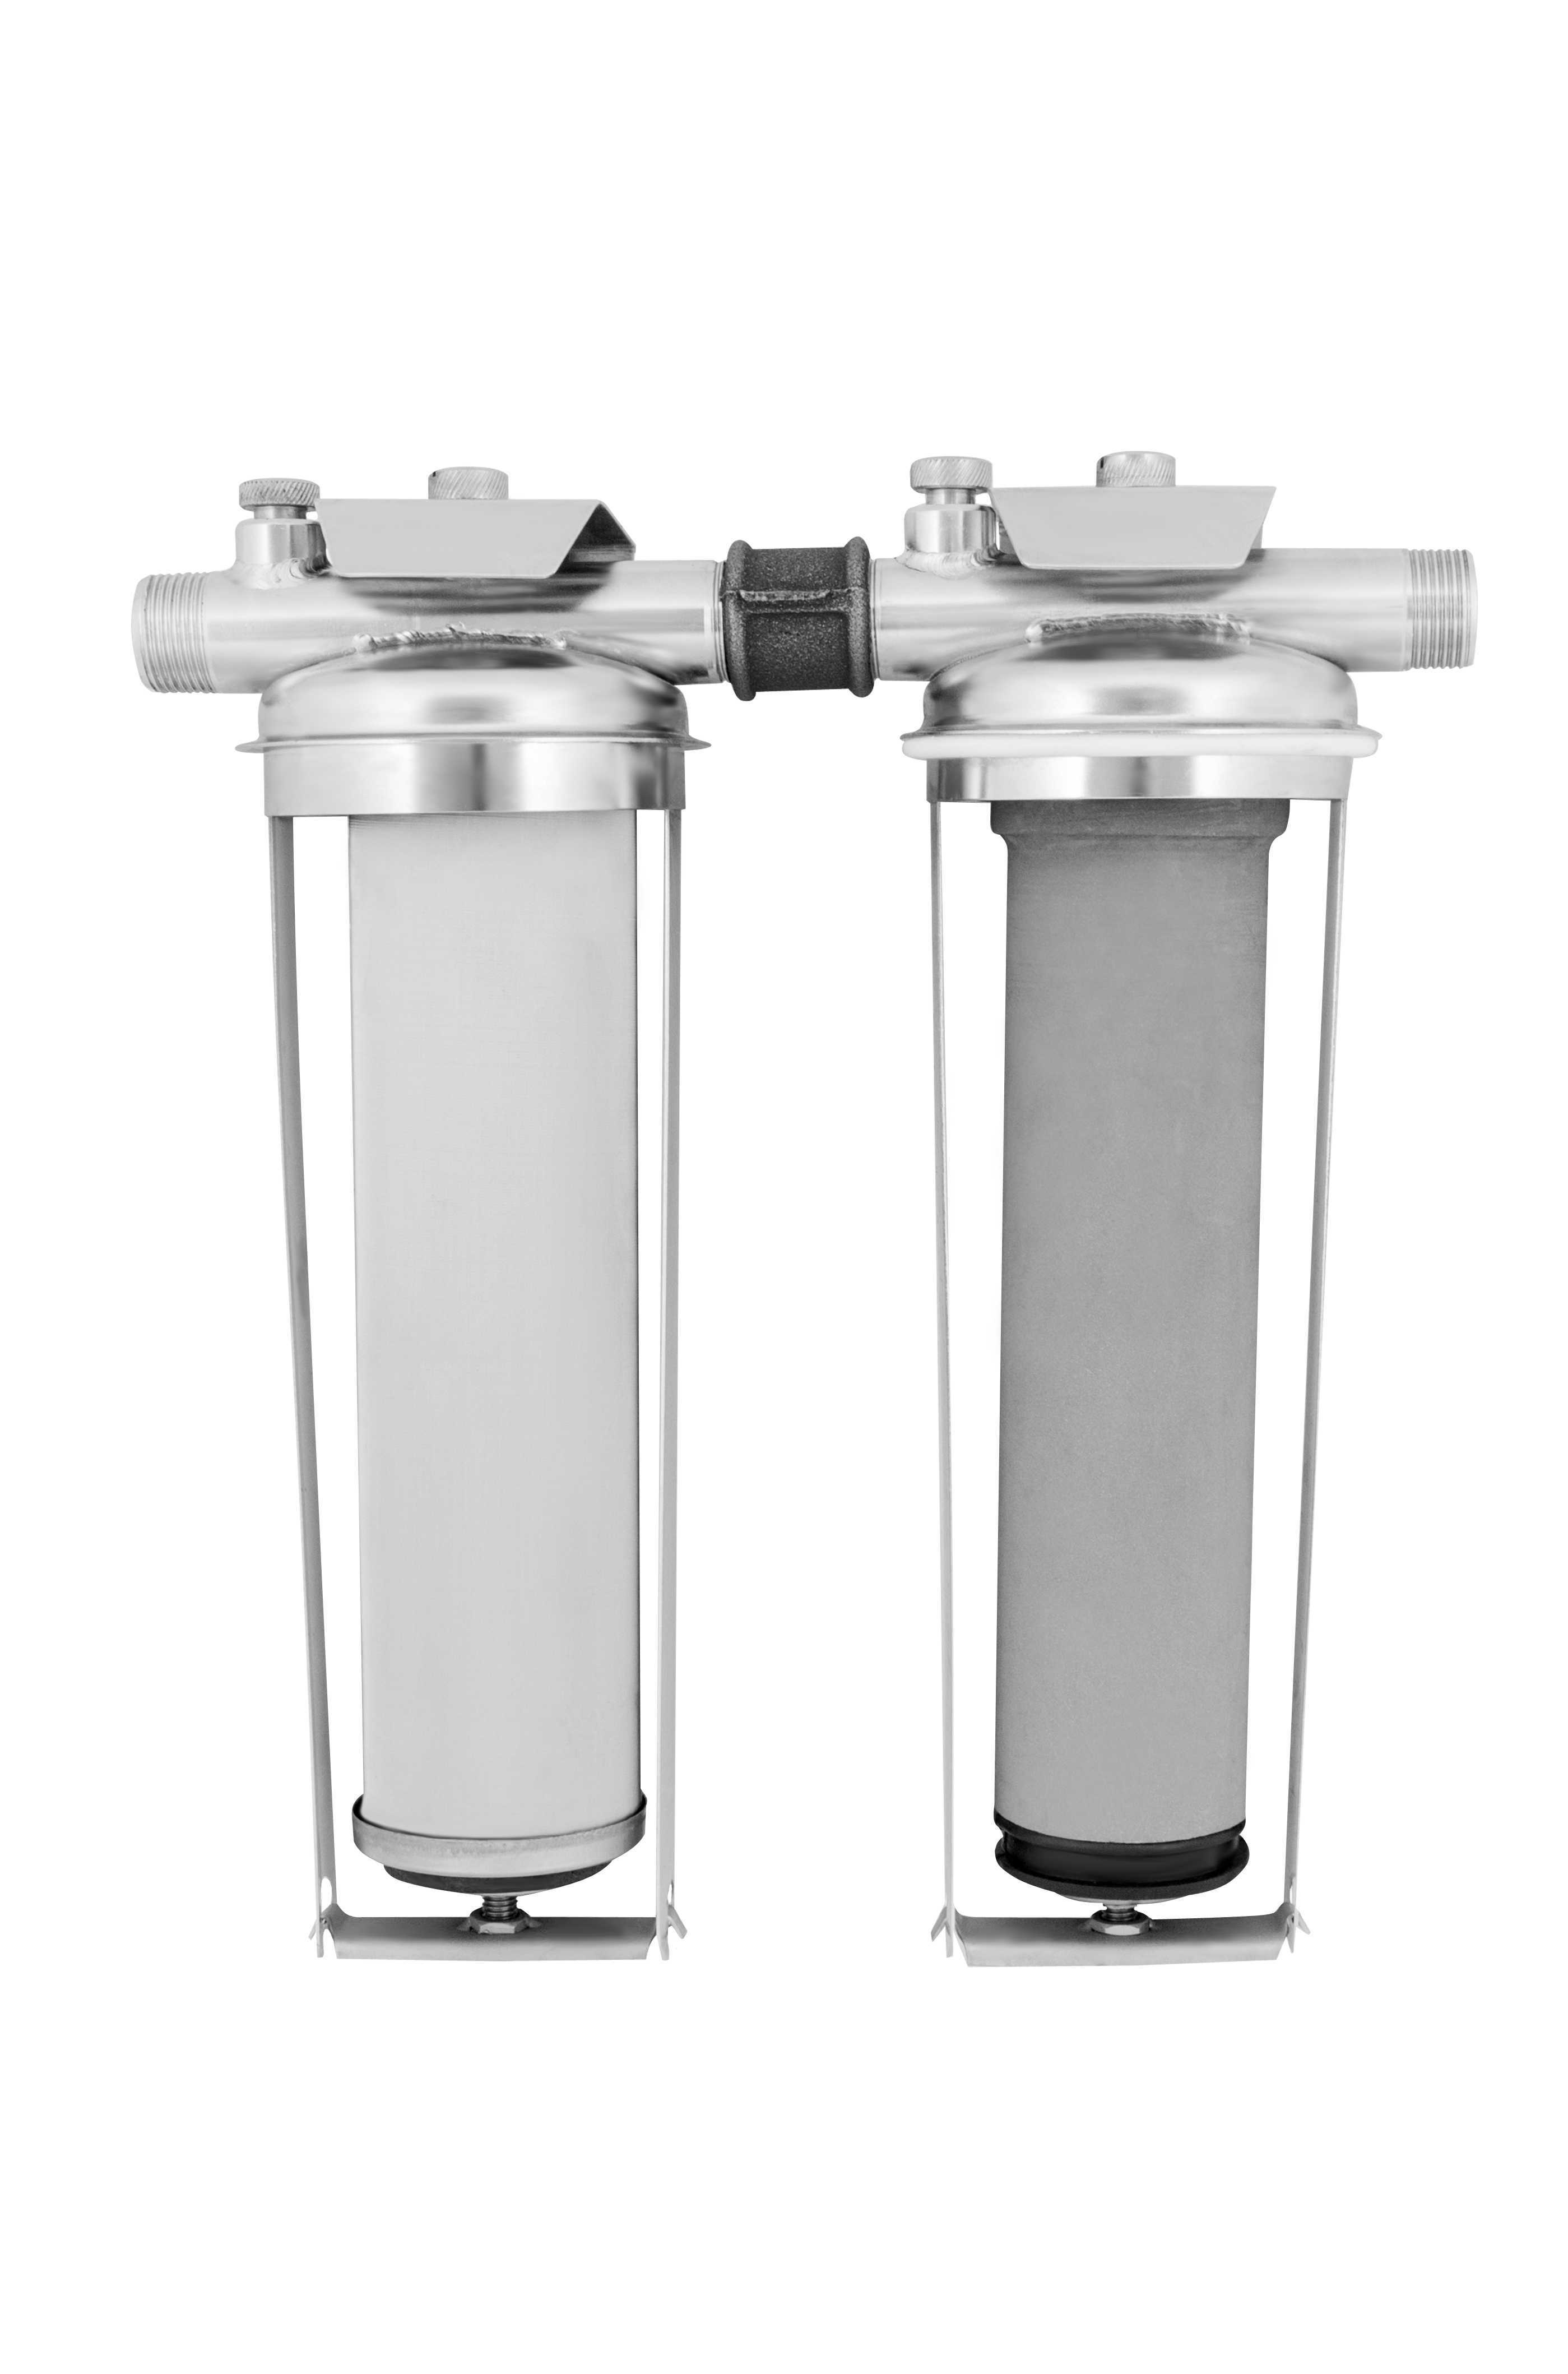 Титановый фильтр для очистки воды: принцип работы, устройство, цена и отзывы